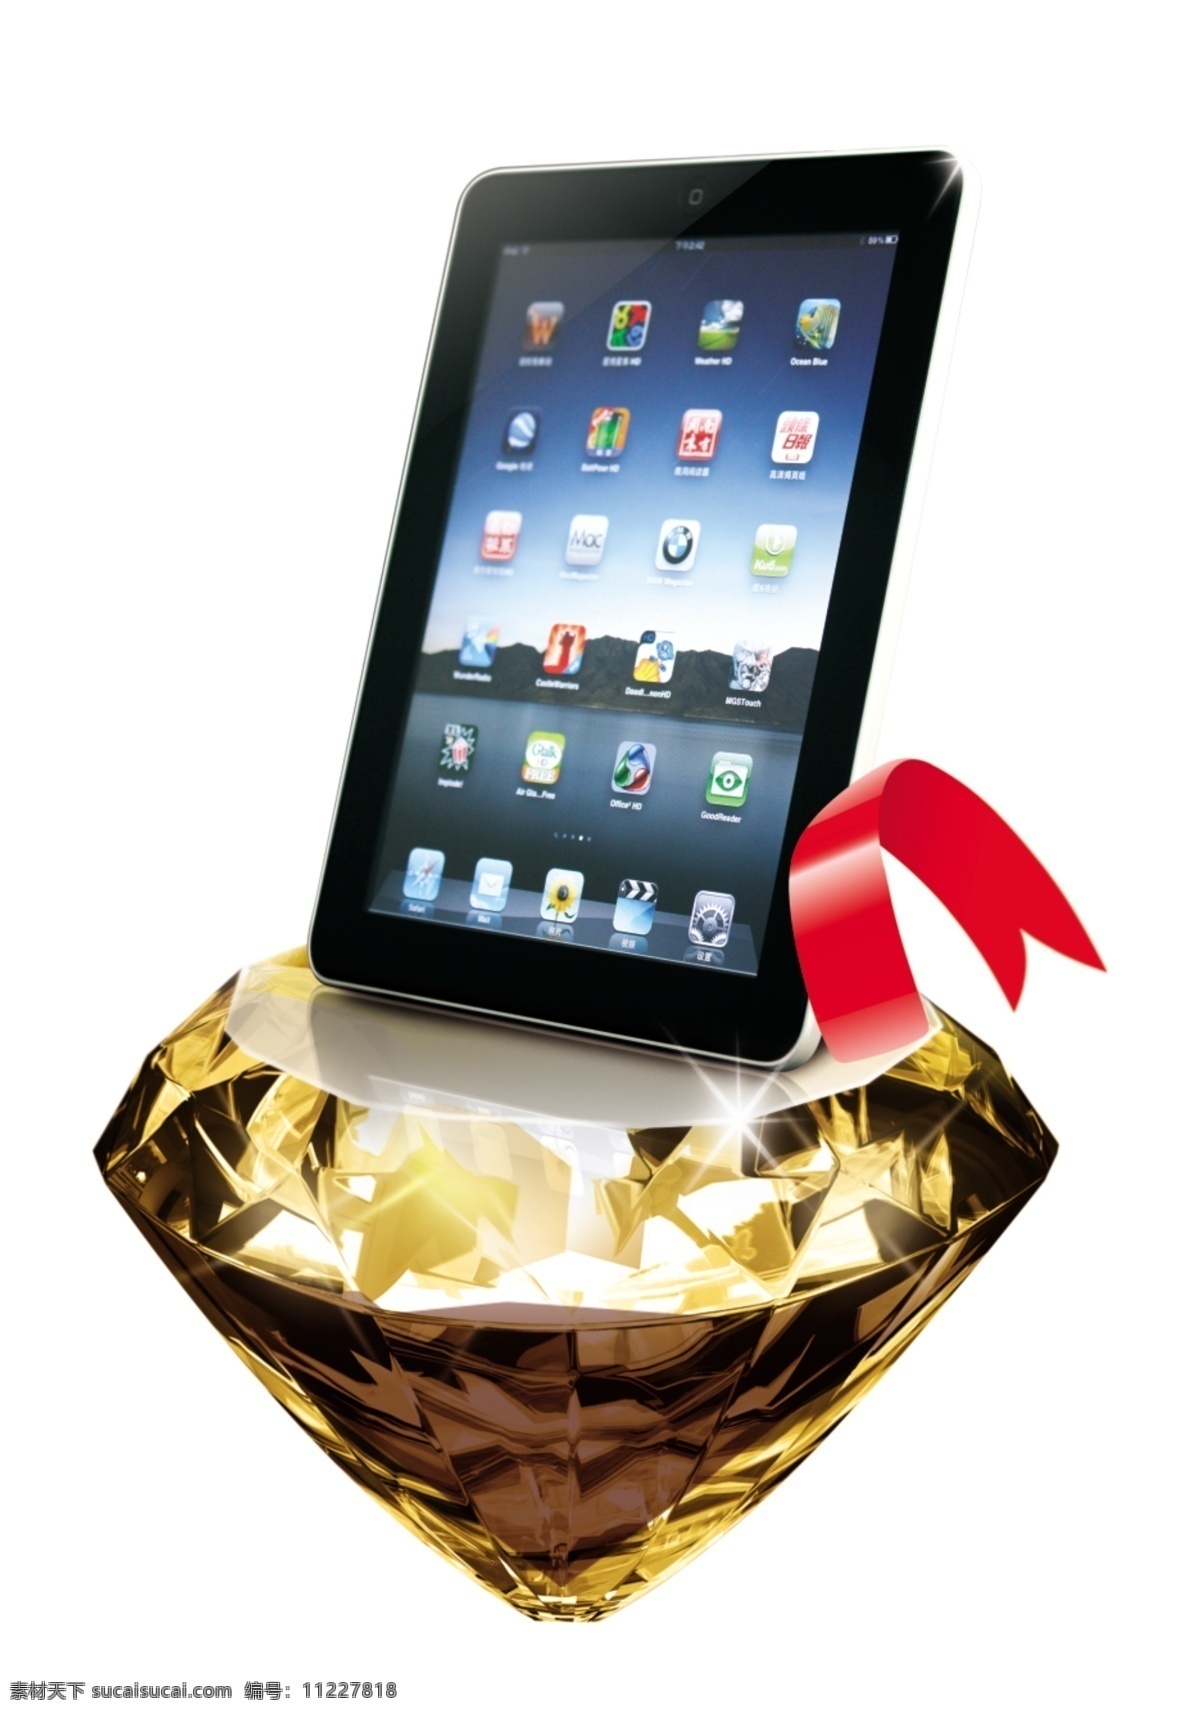 钻石ipad 苹果ipad 钻石 黄钻 苹果手机 苹果 版面 现代科技 数码产品